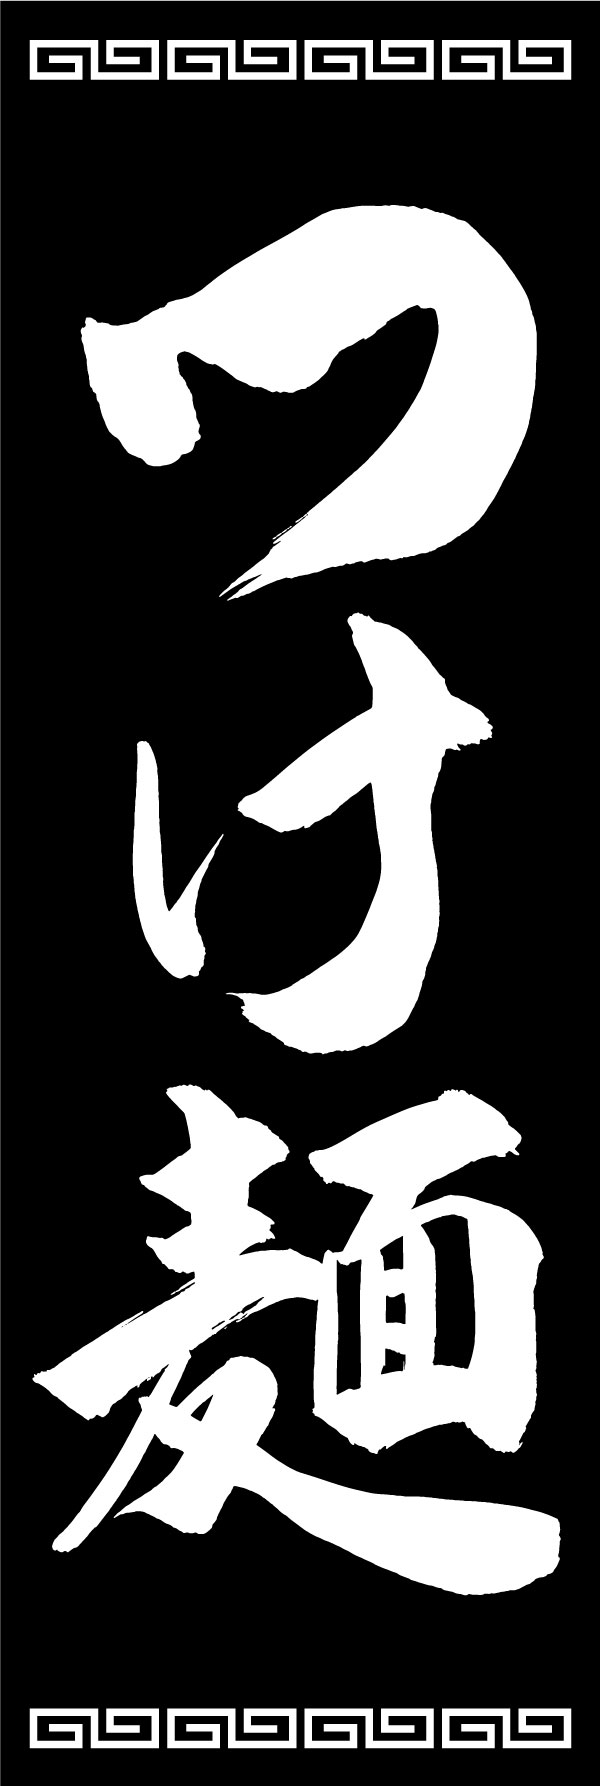 つけ麺 139_01 「つけ麺」ののぼりです。江戸文字職人 加藤木大介氏による、手書きの筆文字です。完全書き下ろし、唯一無二ののぼりは当店だけのオリジナル商品です。（Y.M）